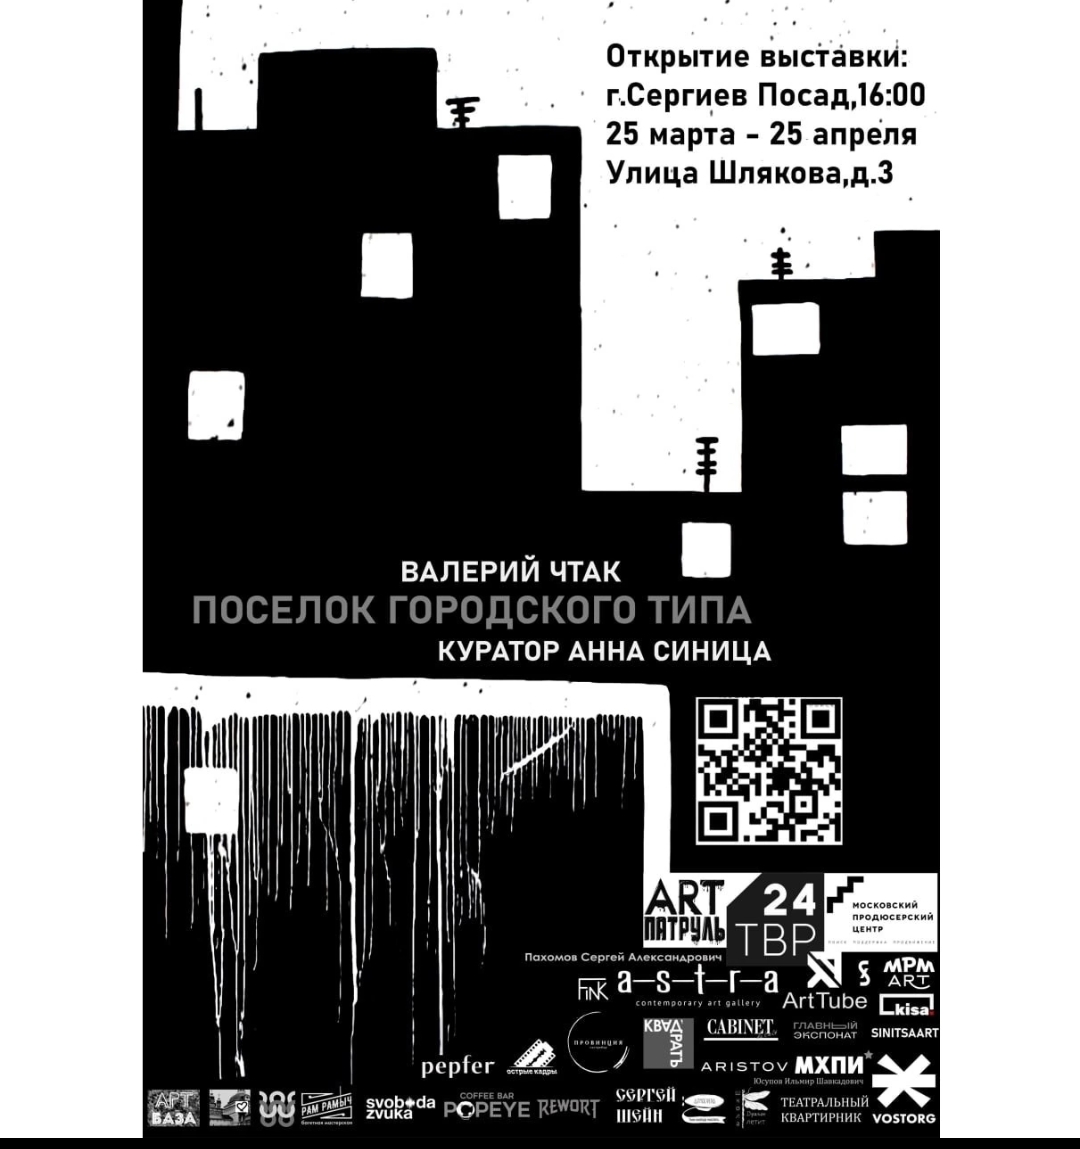 Выставка Валерия Чтака «Поселок городского типа»